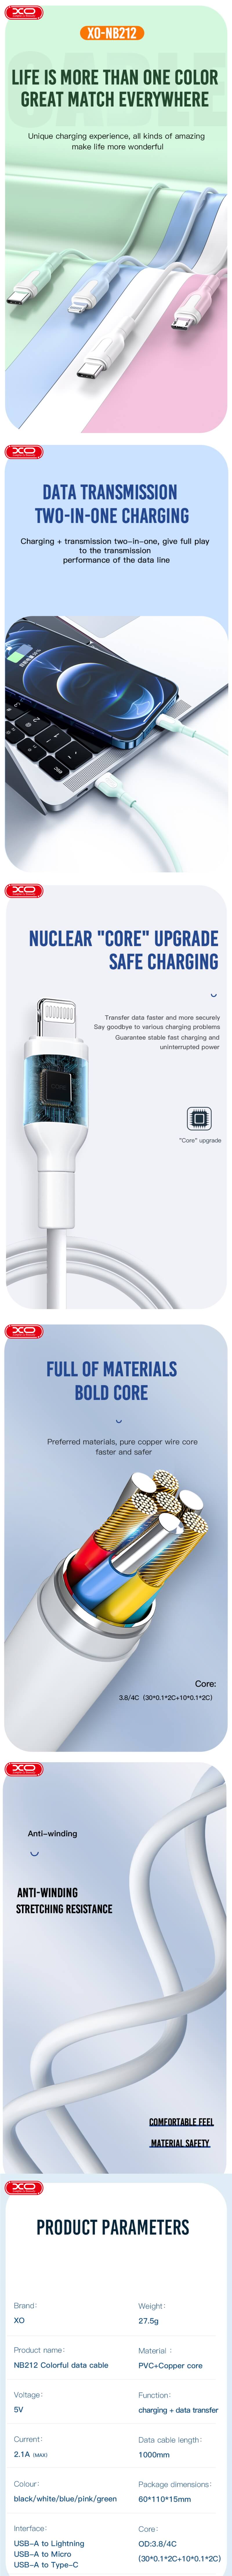 XO kabel NB212 USB - microUSB 1,0 m 2,1A niebieski